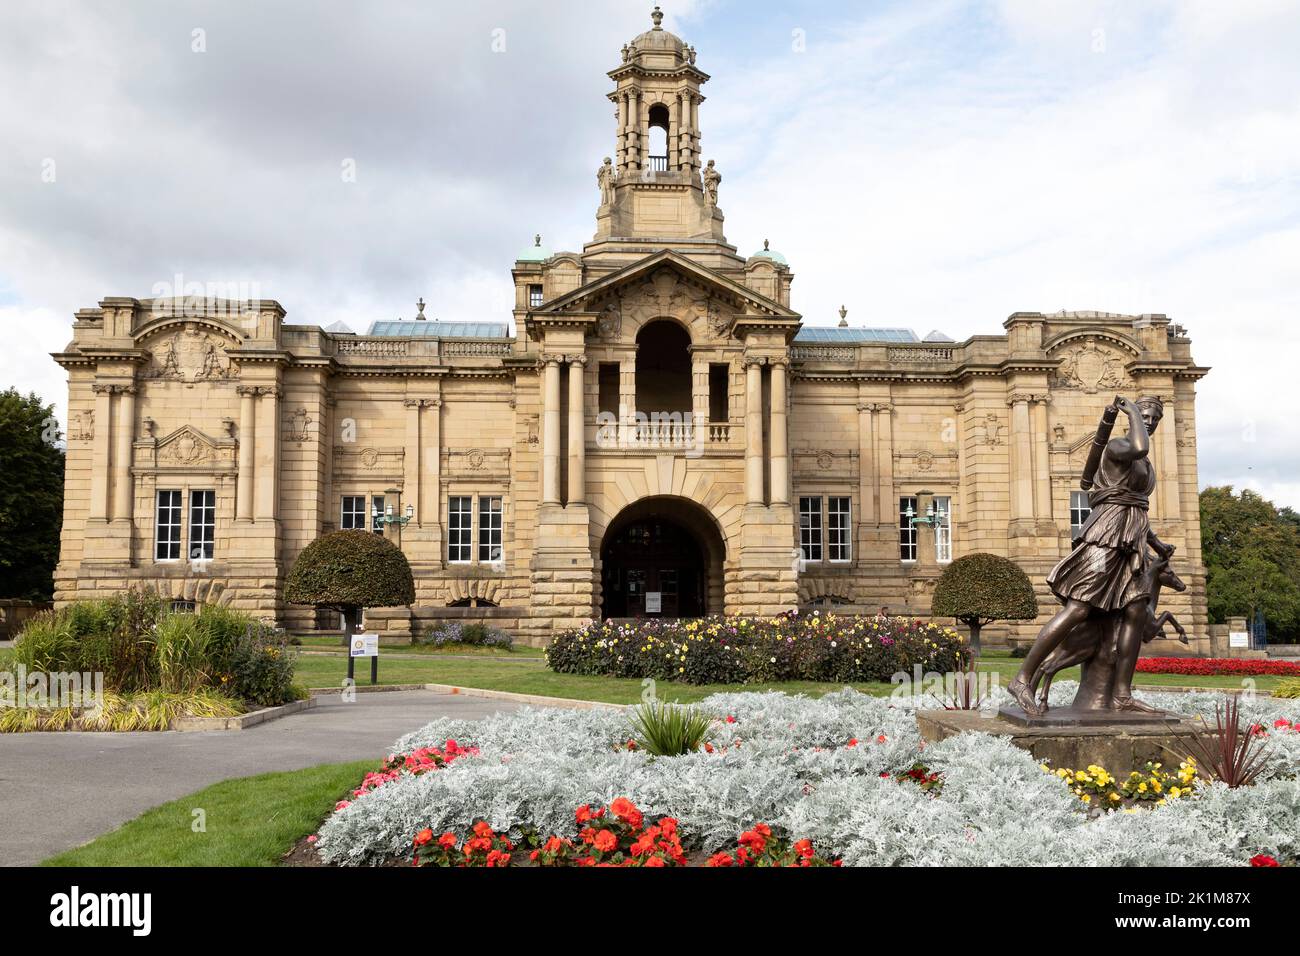 Cartwright Hall à Lister Park à Bradford, West Yorkshire. Le hall abrite une galerie d'art civique dans un parc nommé d'après un propriétaire d'usine. Banque D'Images